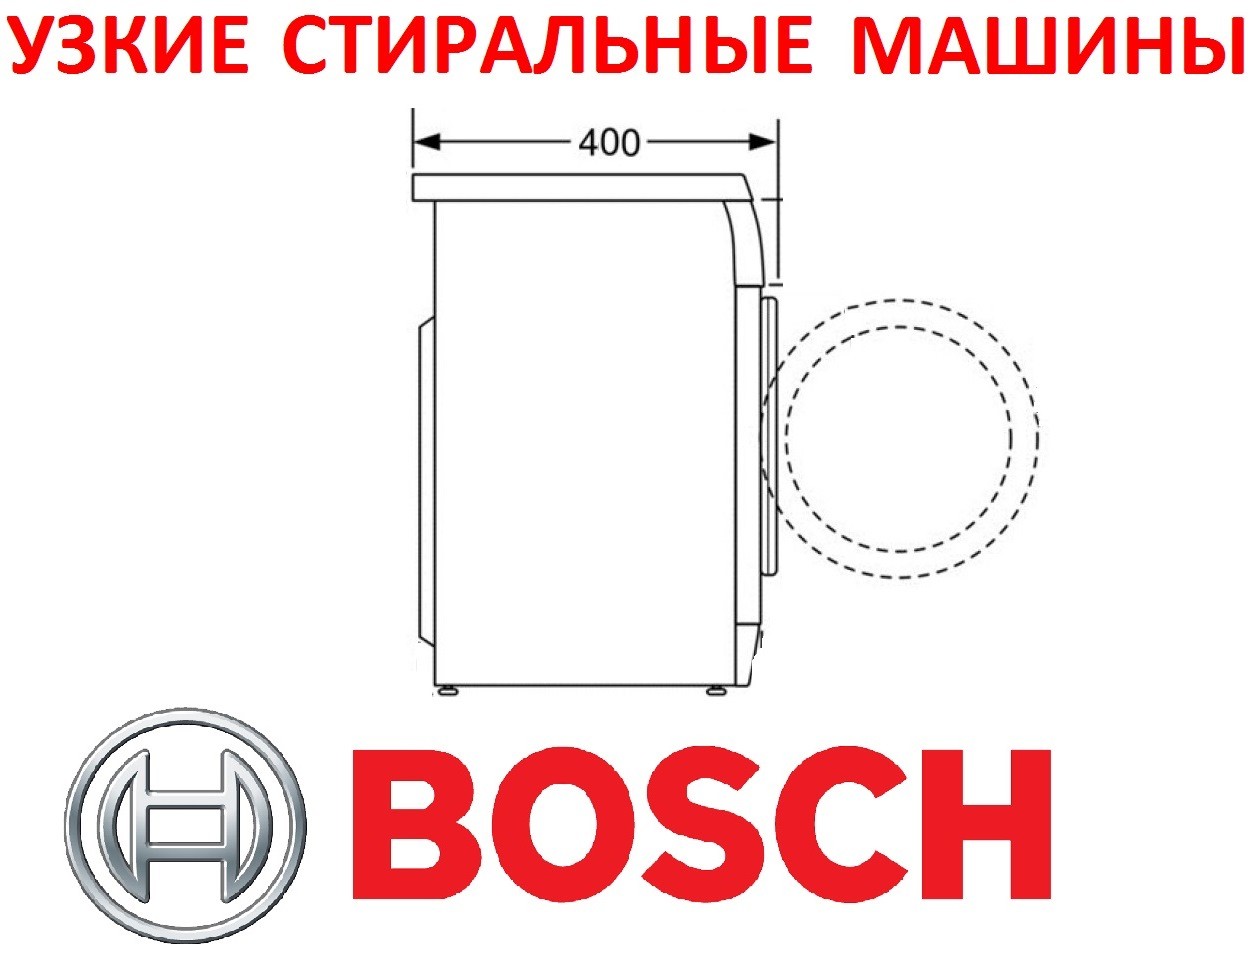 Podkładki Bosch wąskie ładowane od przodu